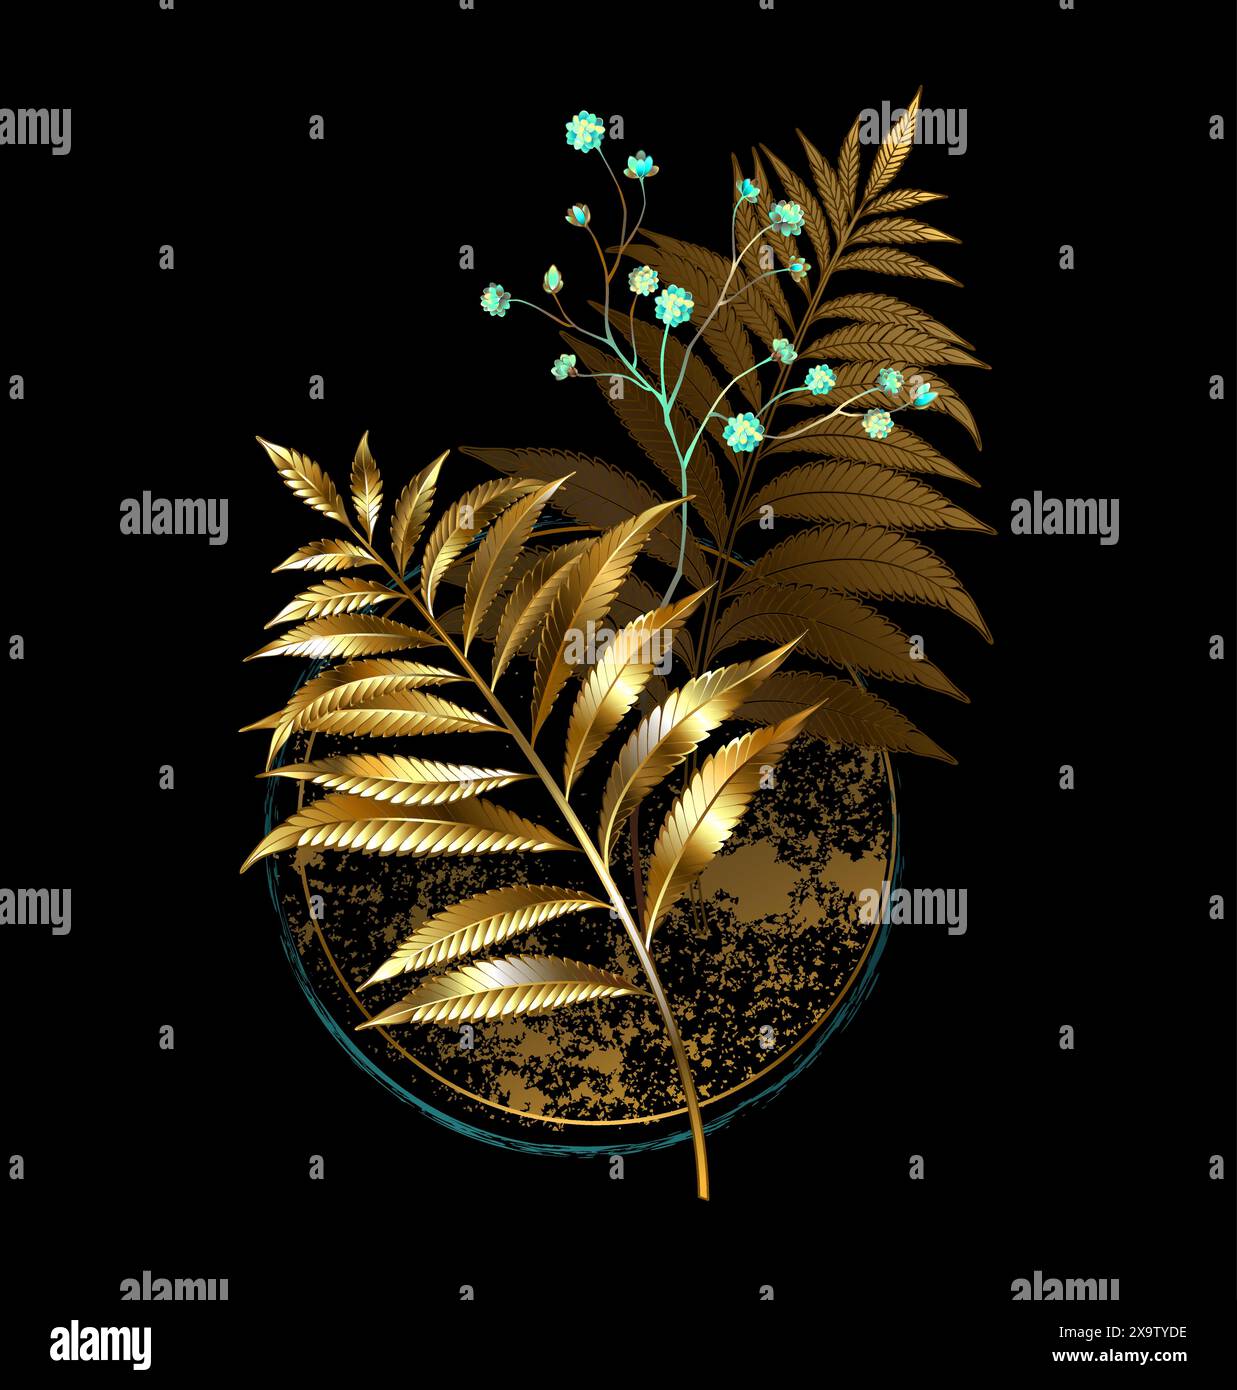 Cerchio testurizzato con composizione floreale di gioielli dorati rami di felce e rametto di menta gypsophila su sfondo nero. Felce dorata. Illustrazione Vettoriale